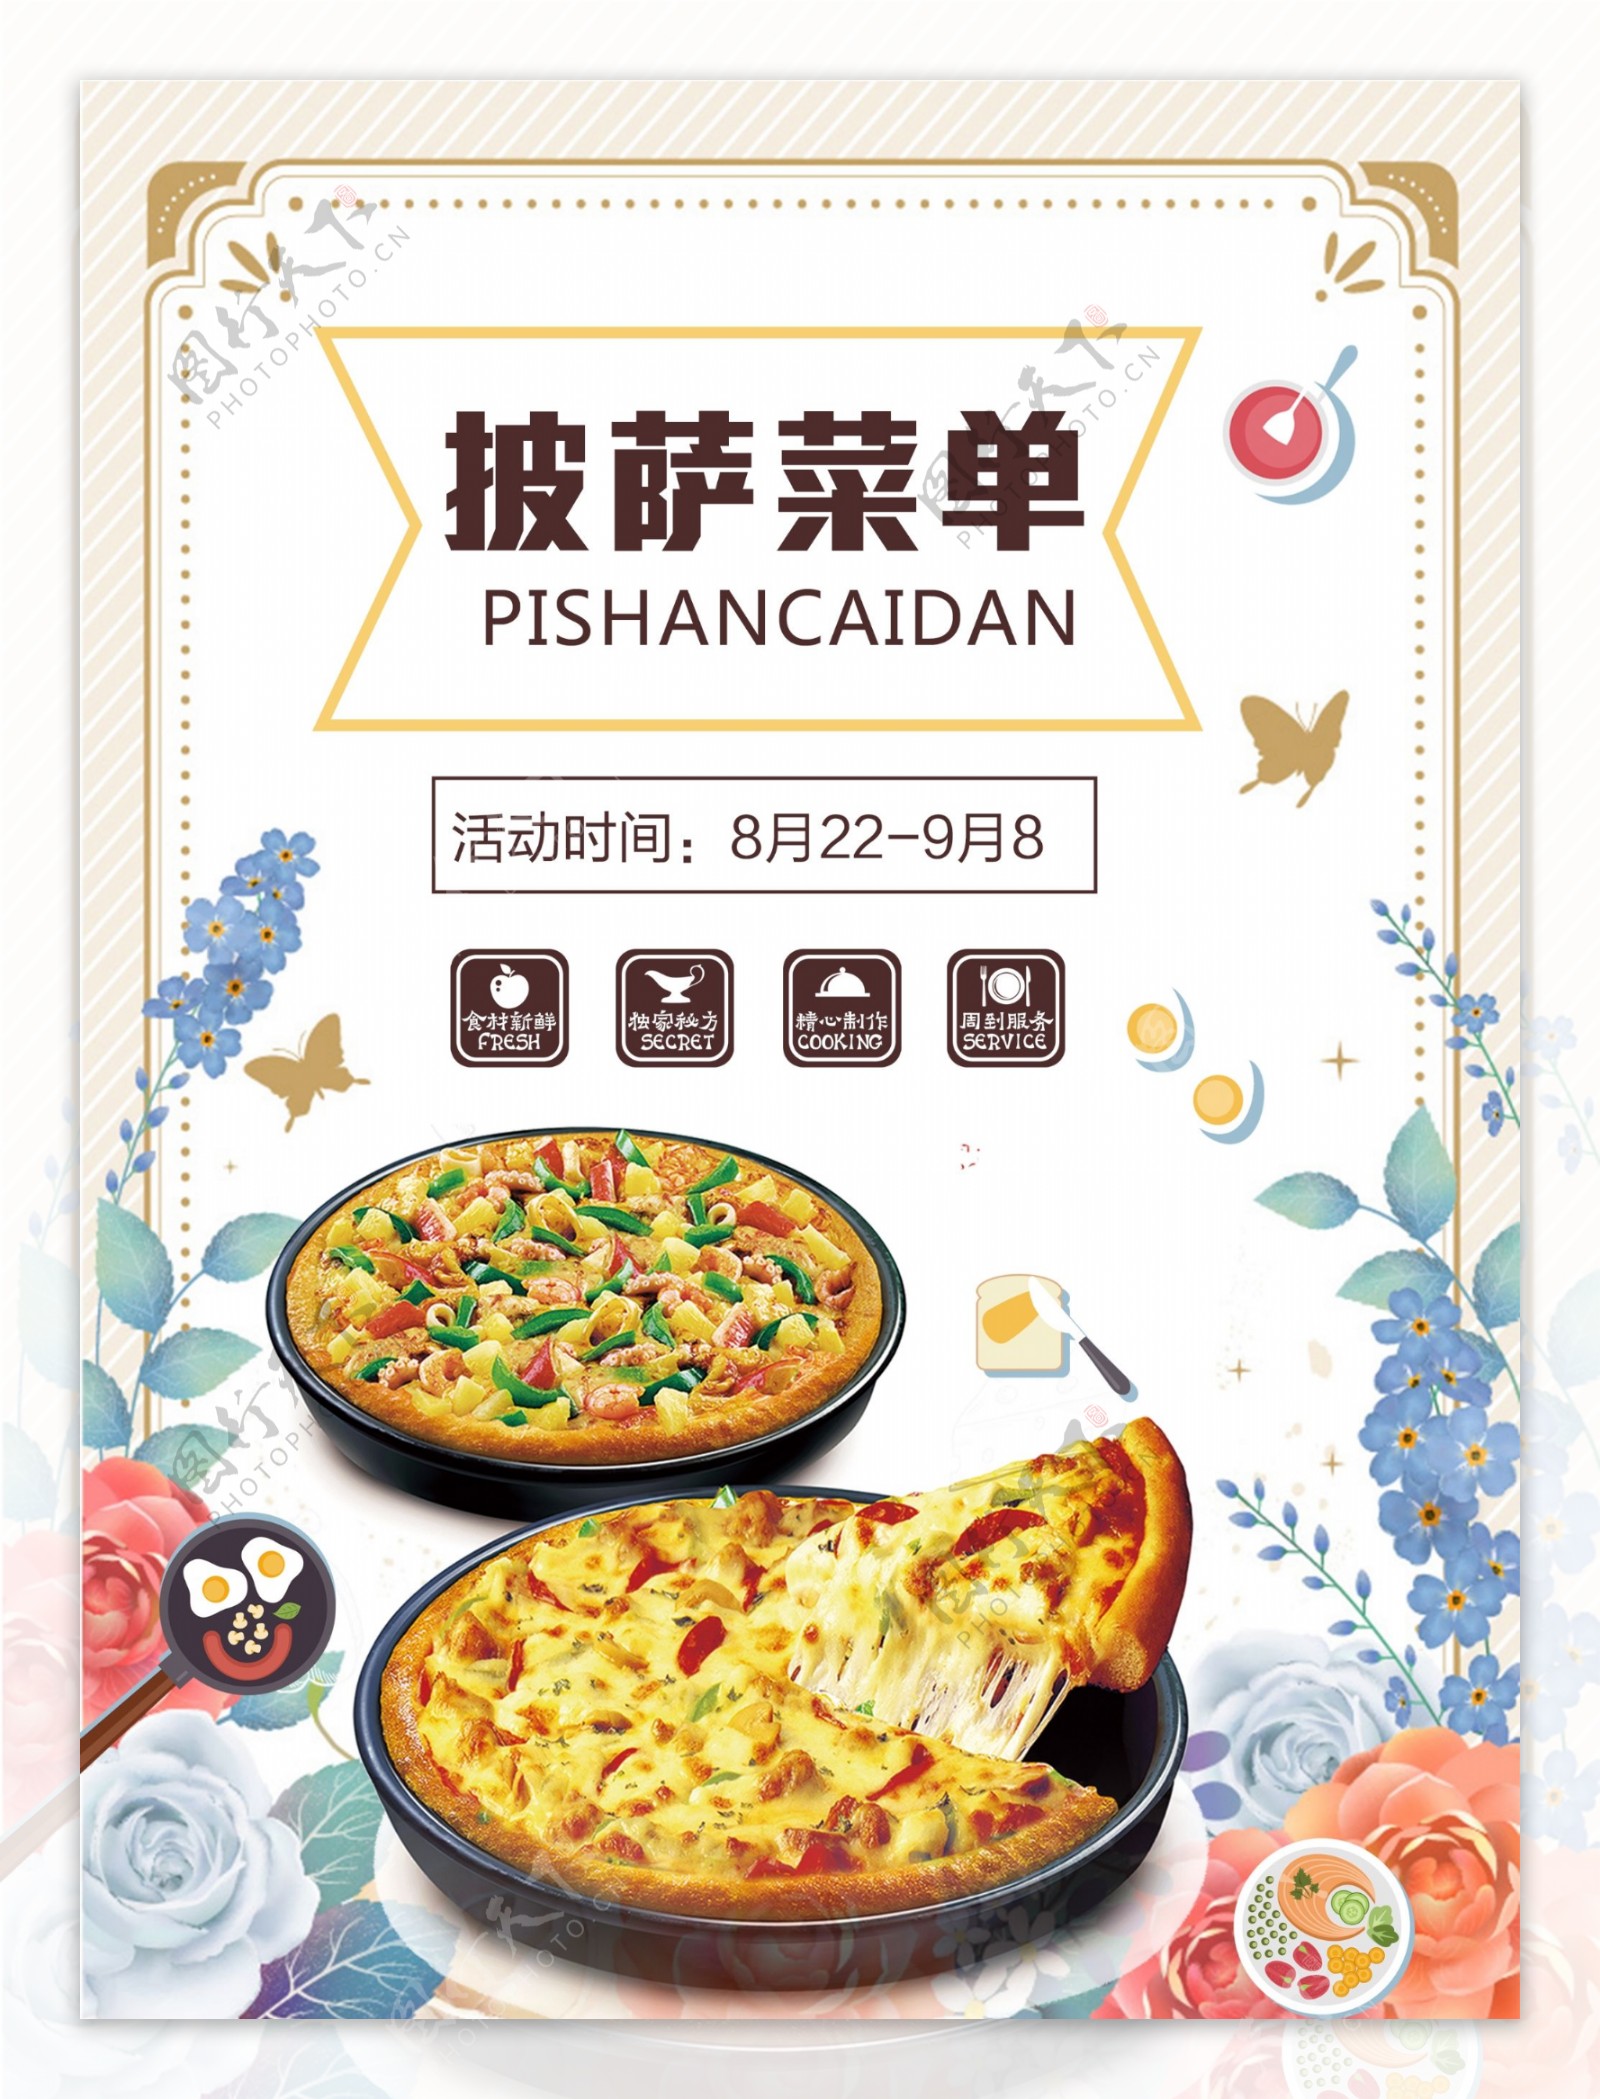 创意中国风披萨菜单设计图